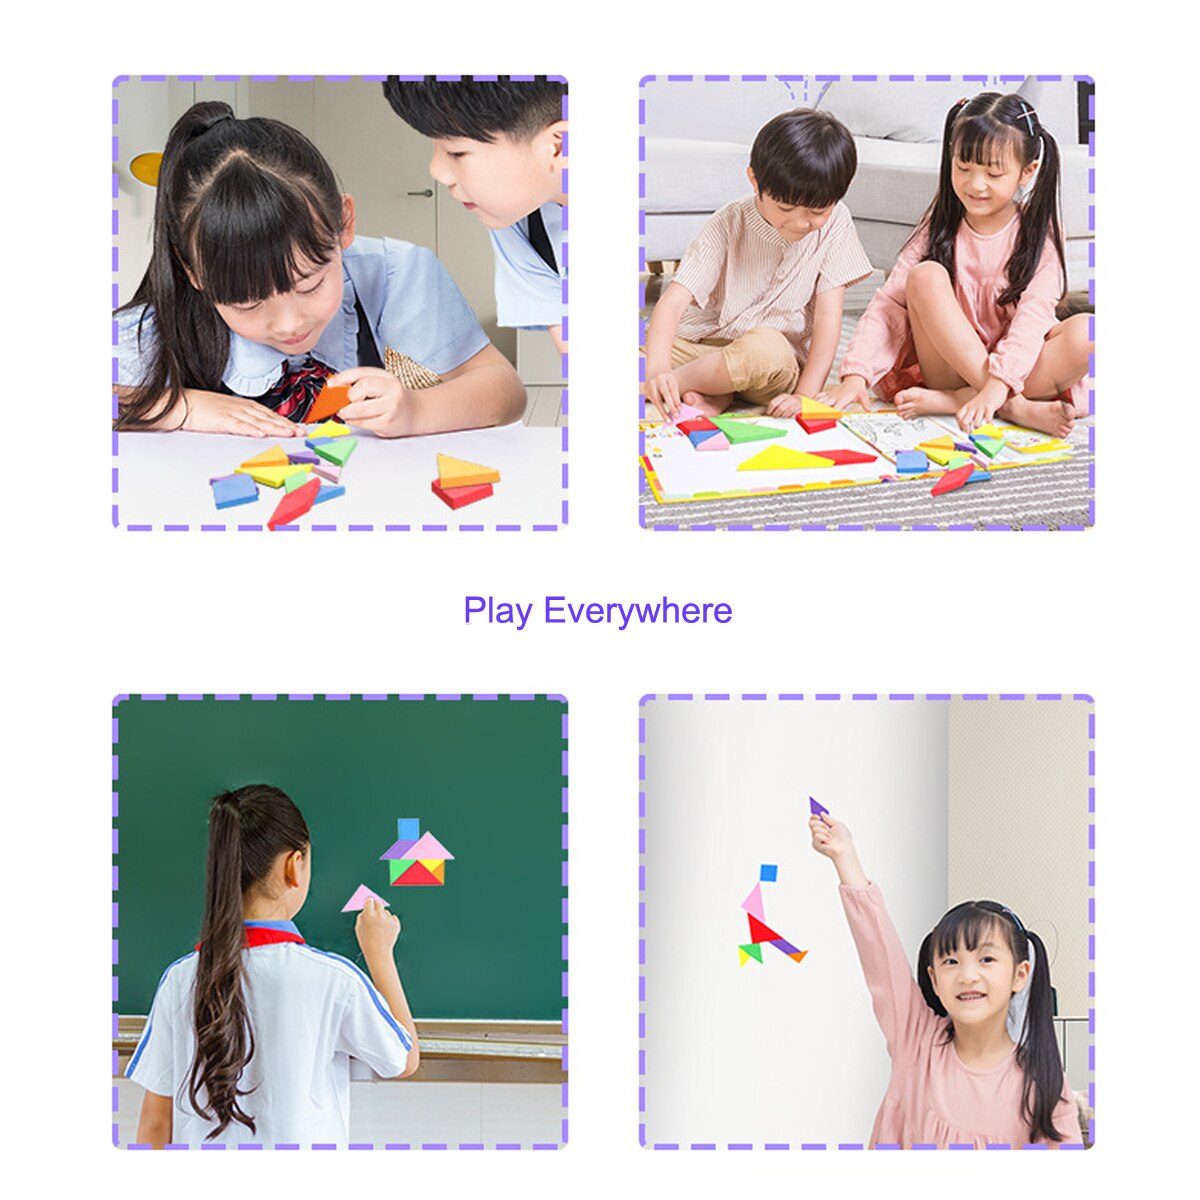 Magentisk mønster rejse tangram puslespil hvidt bræt til tegning af stilkspil puslespil hjernevridere legetøj til børn til voksne